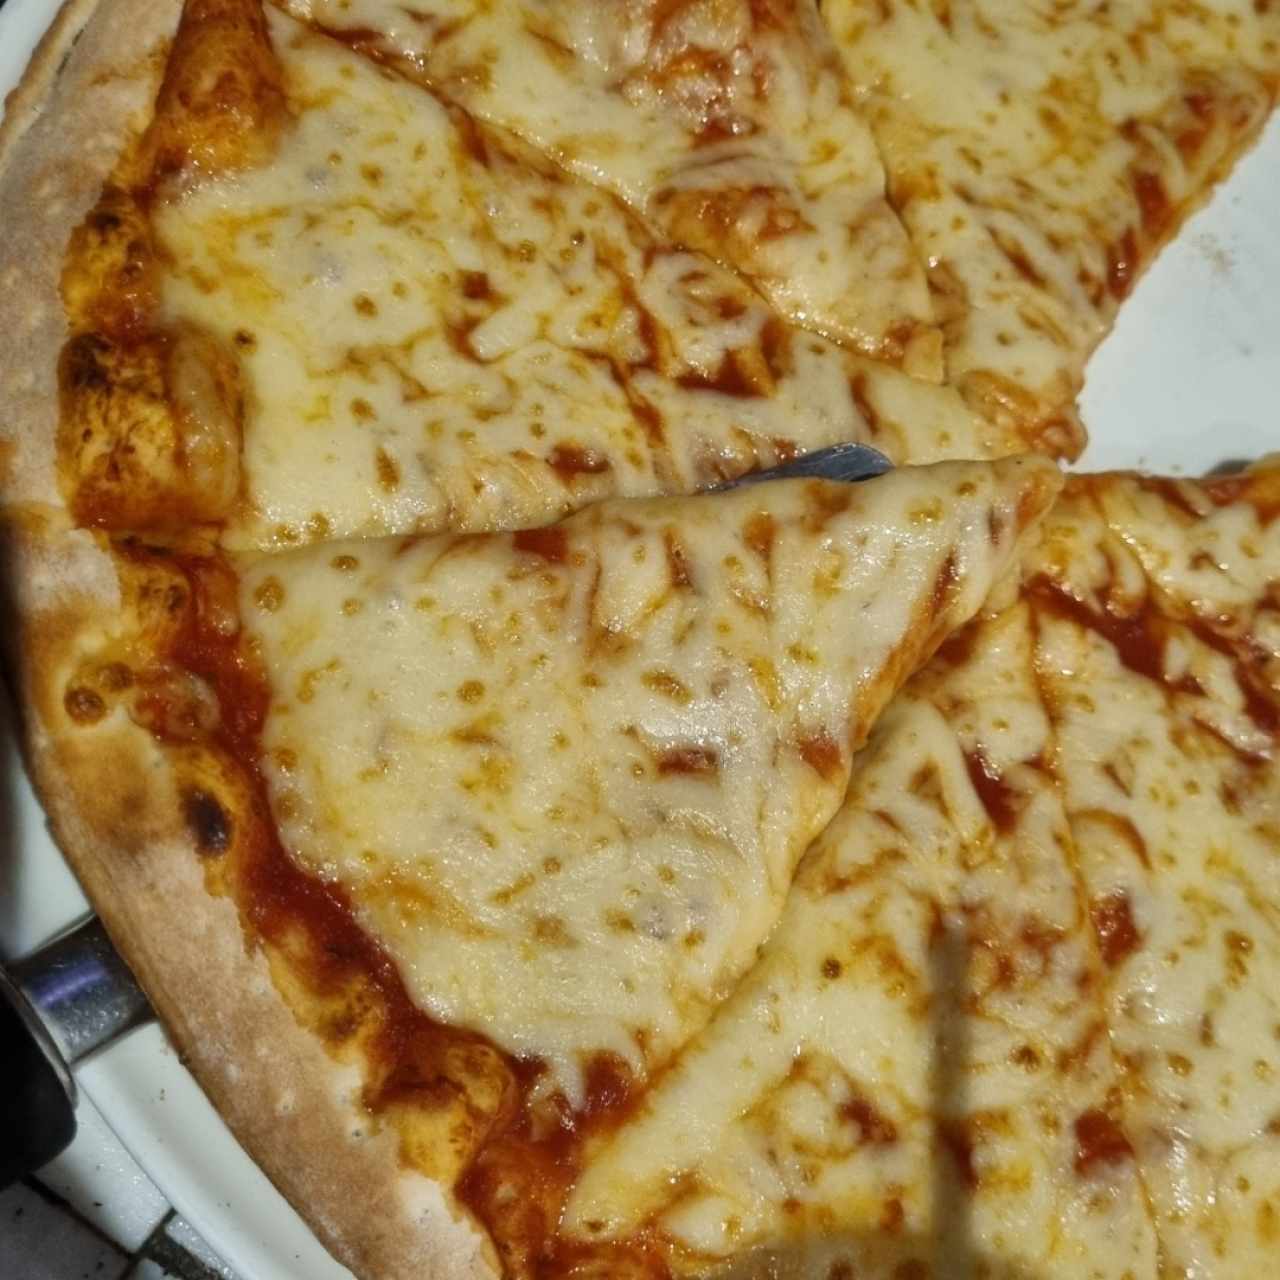 Pizza de Queso